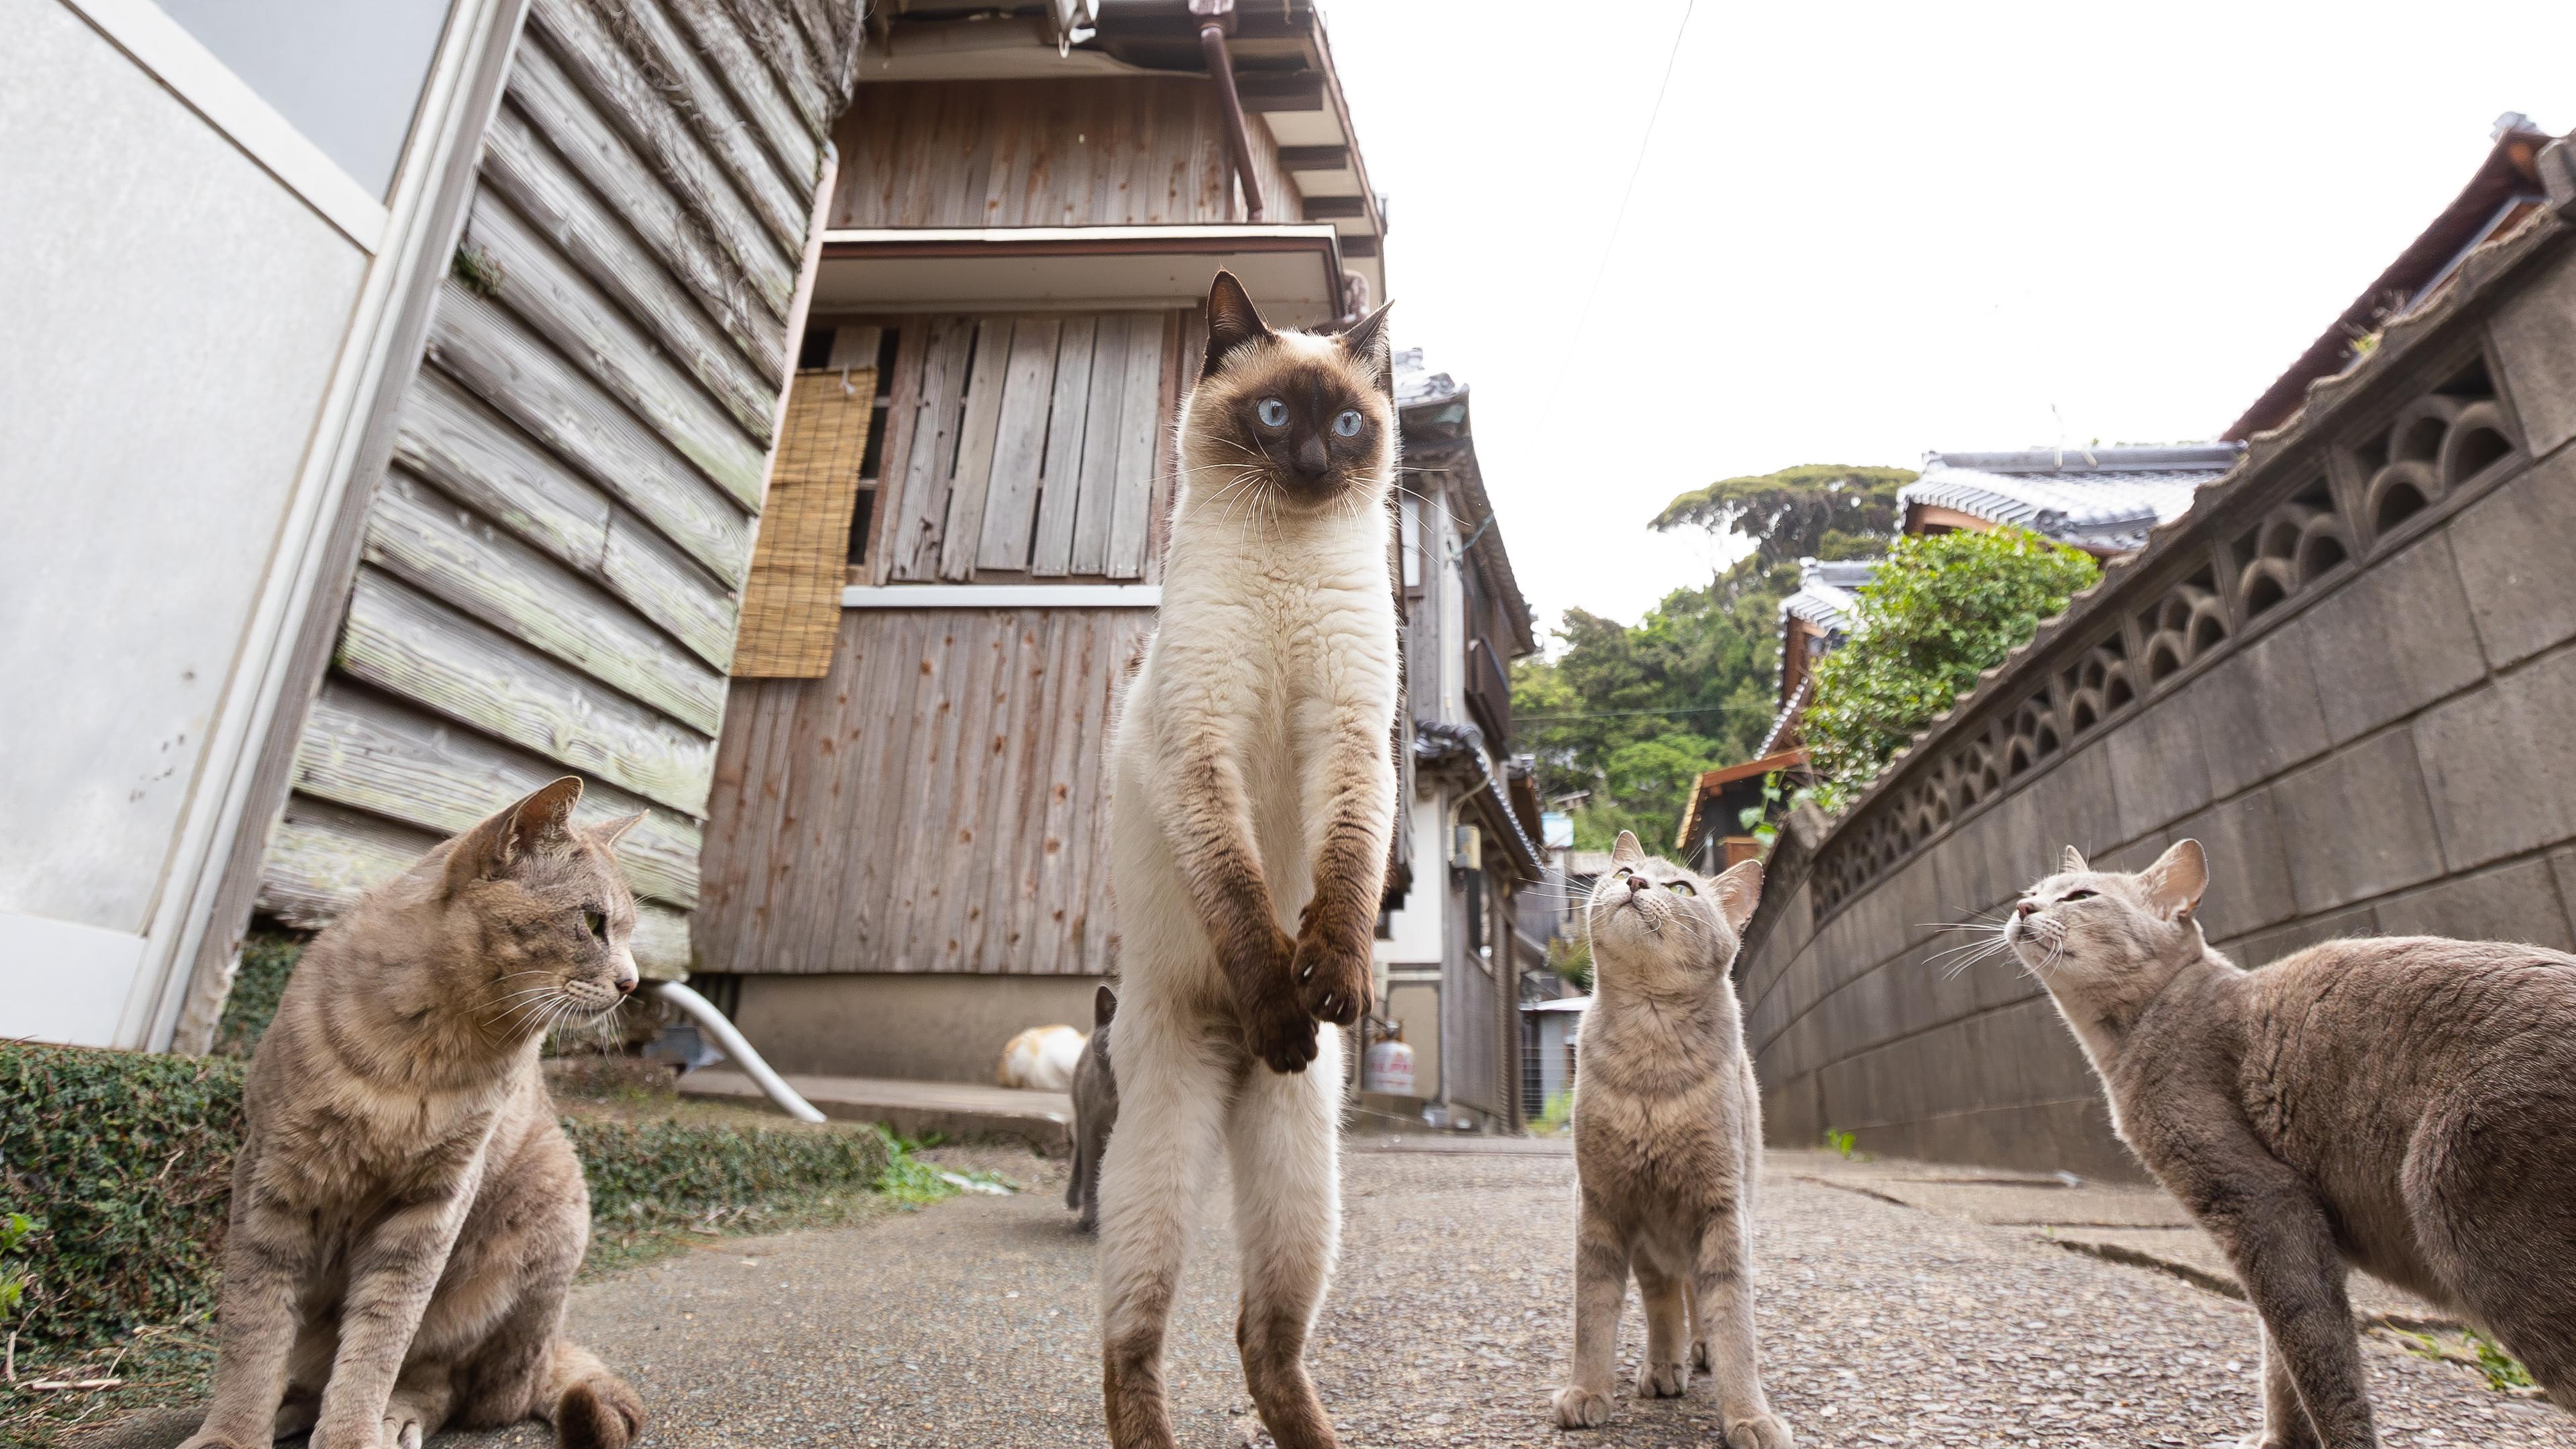 Katze steht auf zwei Beinen und wird von anderen Katzen beobachtet